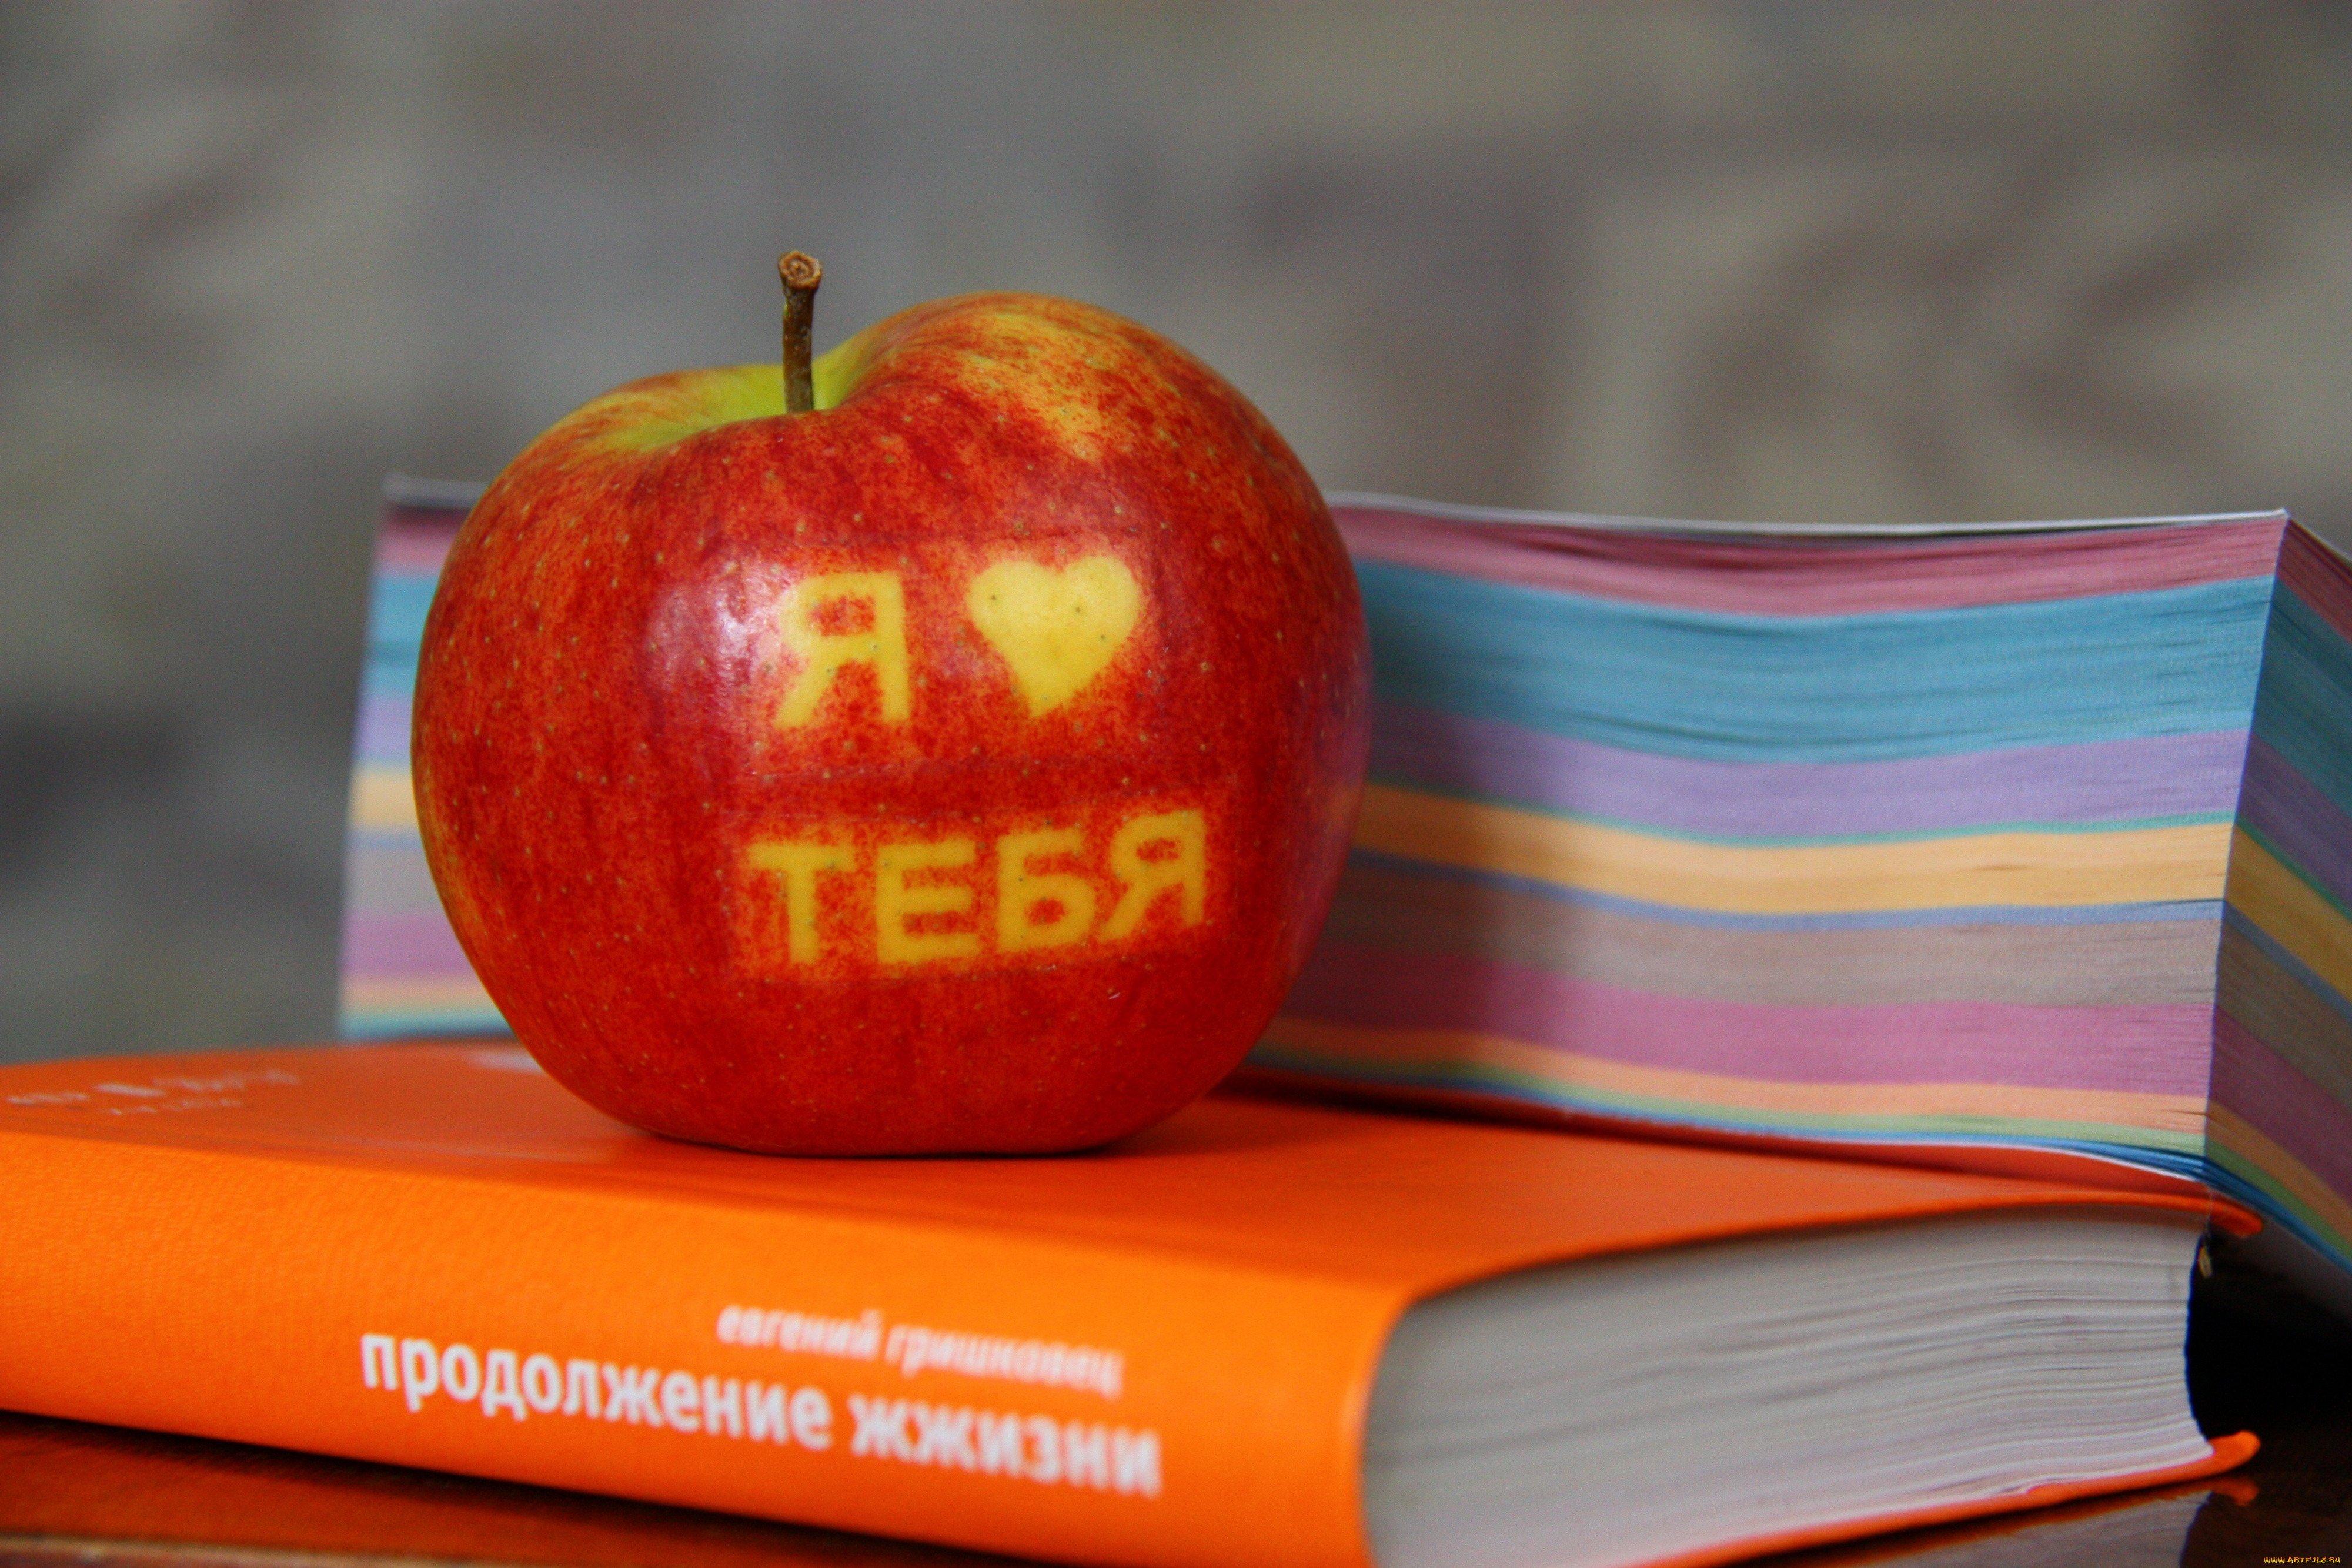 I love книга. Яблоко надпись. Люблю яблоки. Яблоки обои. Яблоко книга.